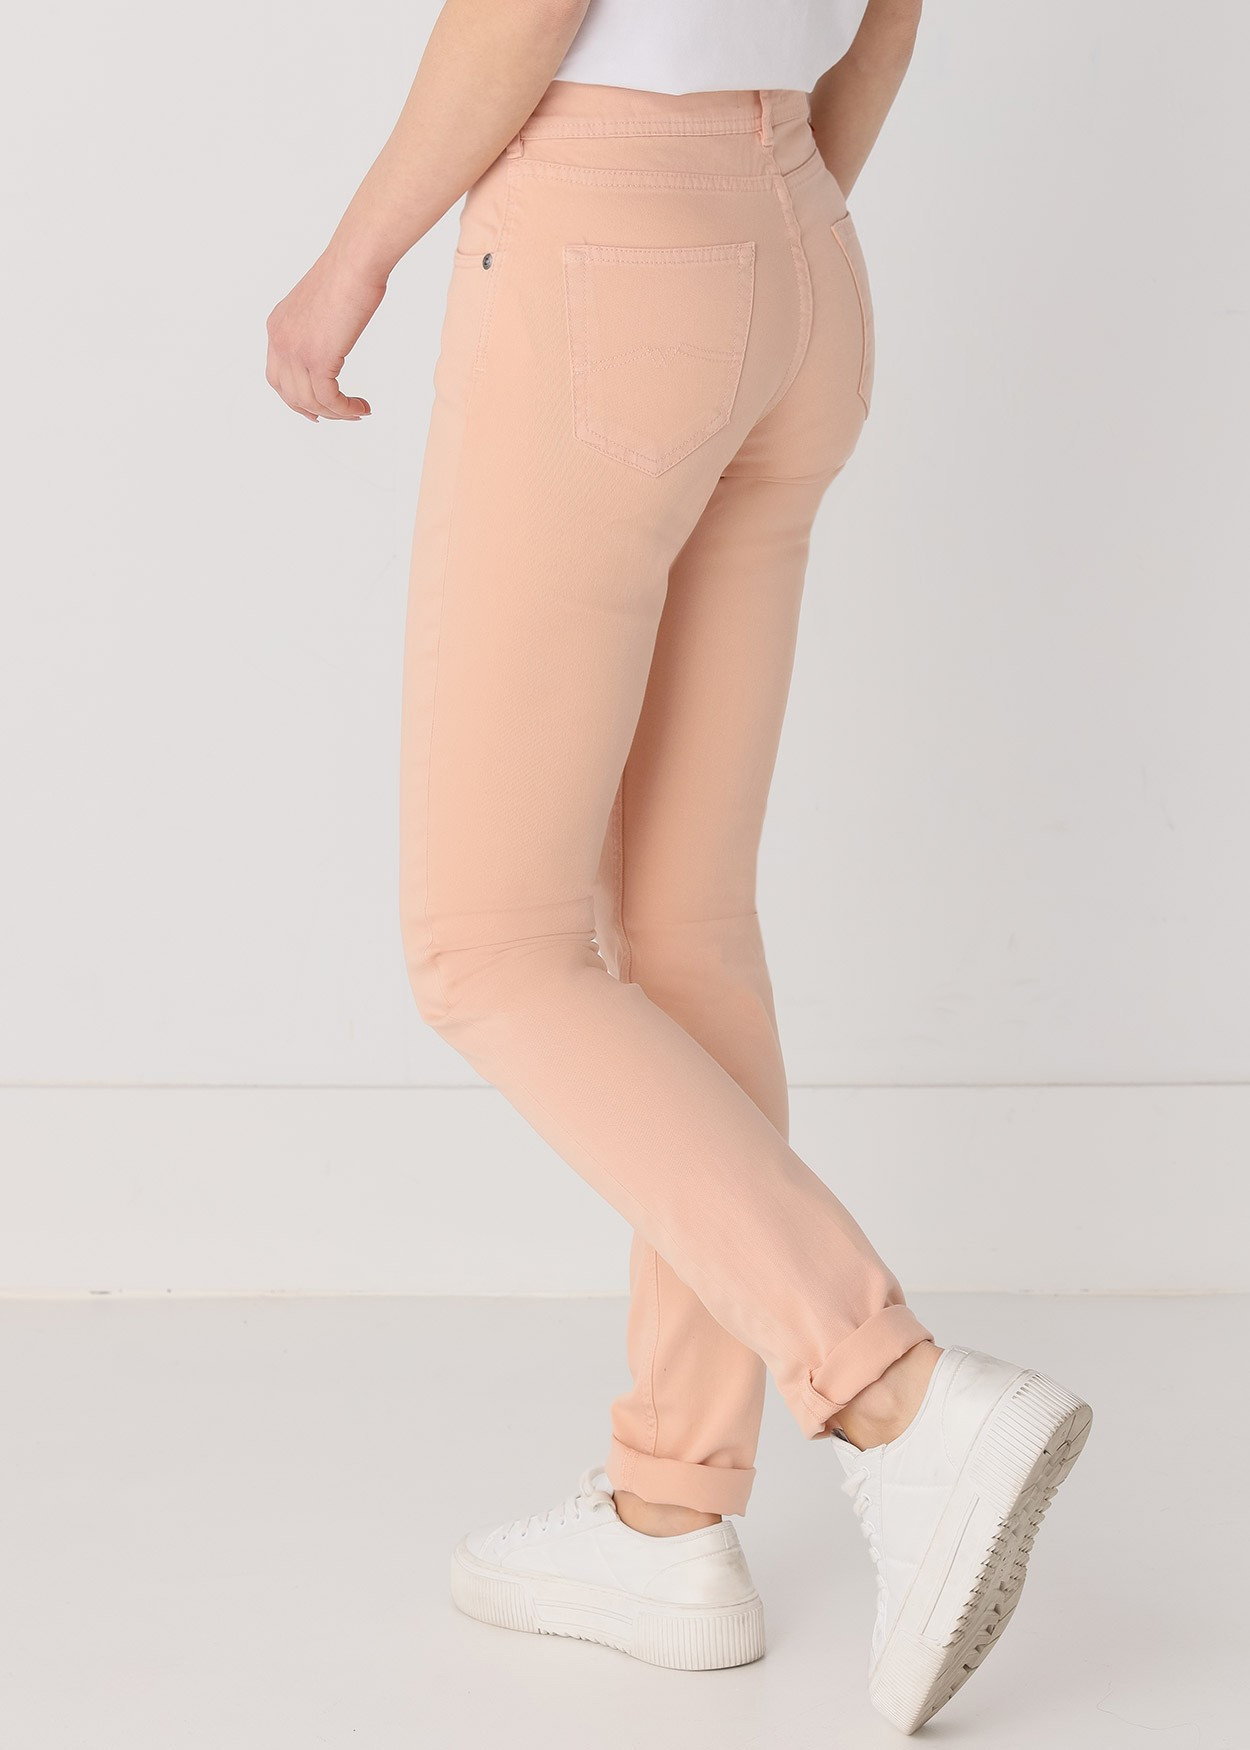 Jeans Nouflore-Pigm |Taille naturelle - Slim | Taille en pouces Cimarron